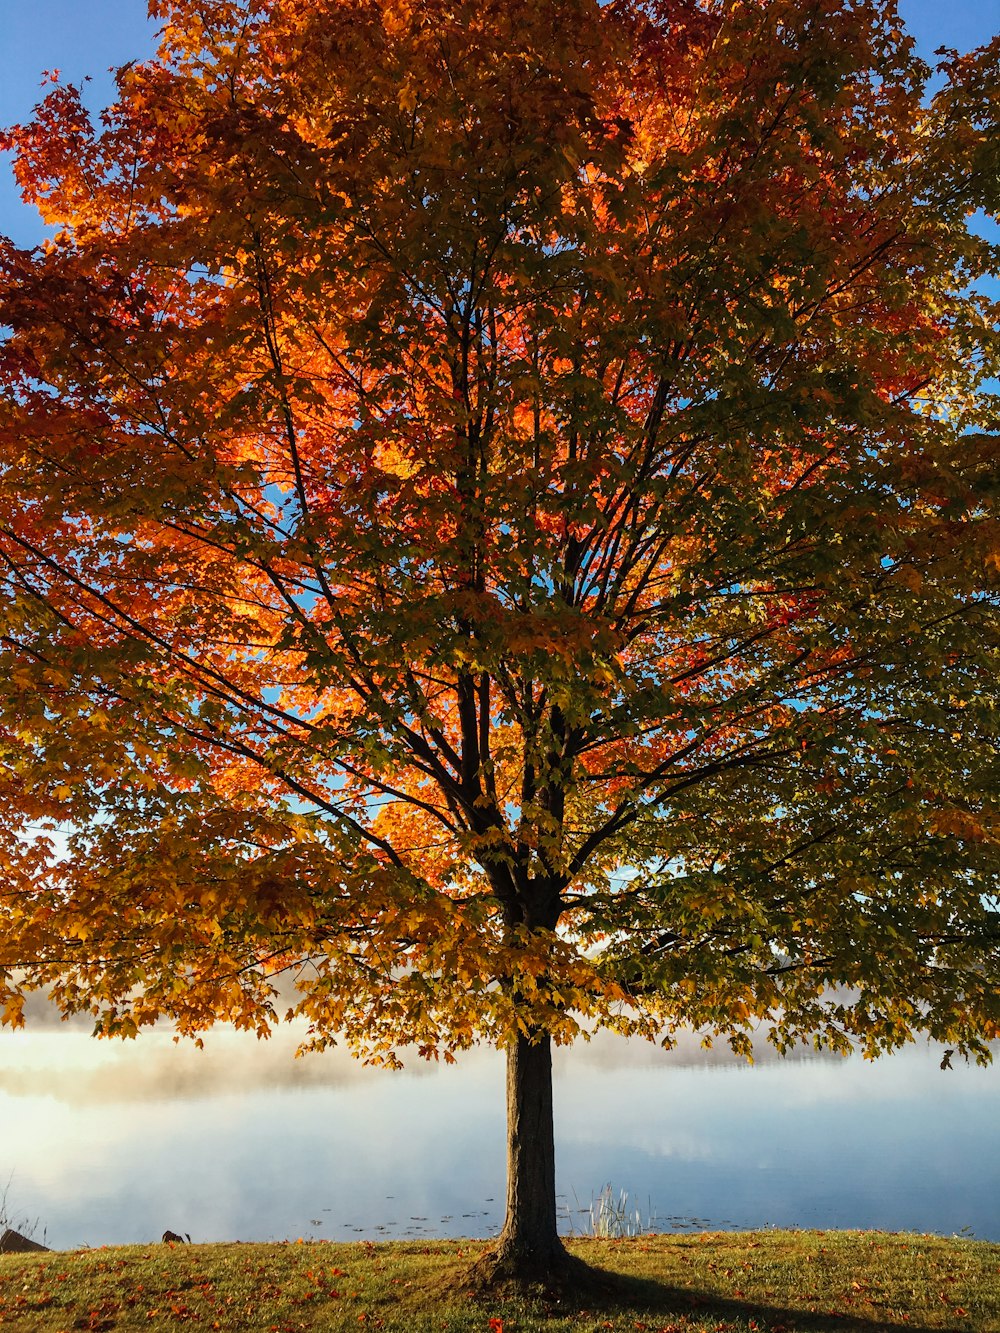 albero a foglia rossa e marrone di giorno